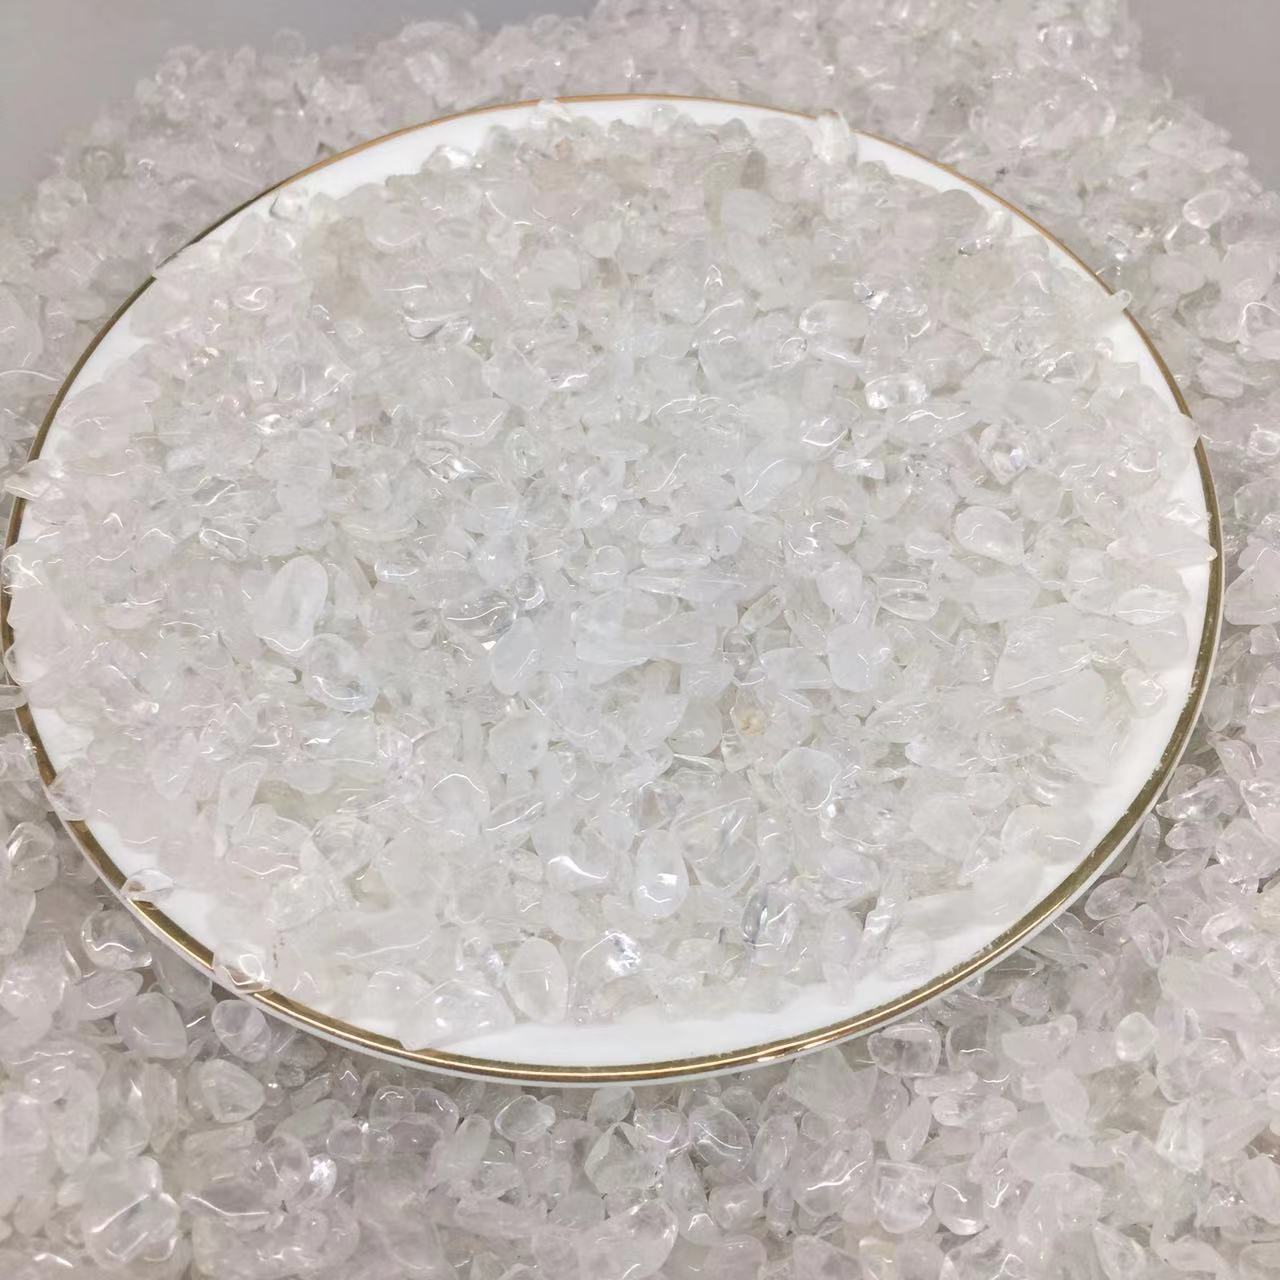 White Crystal Gravel JPY 850/KG